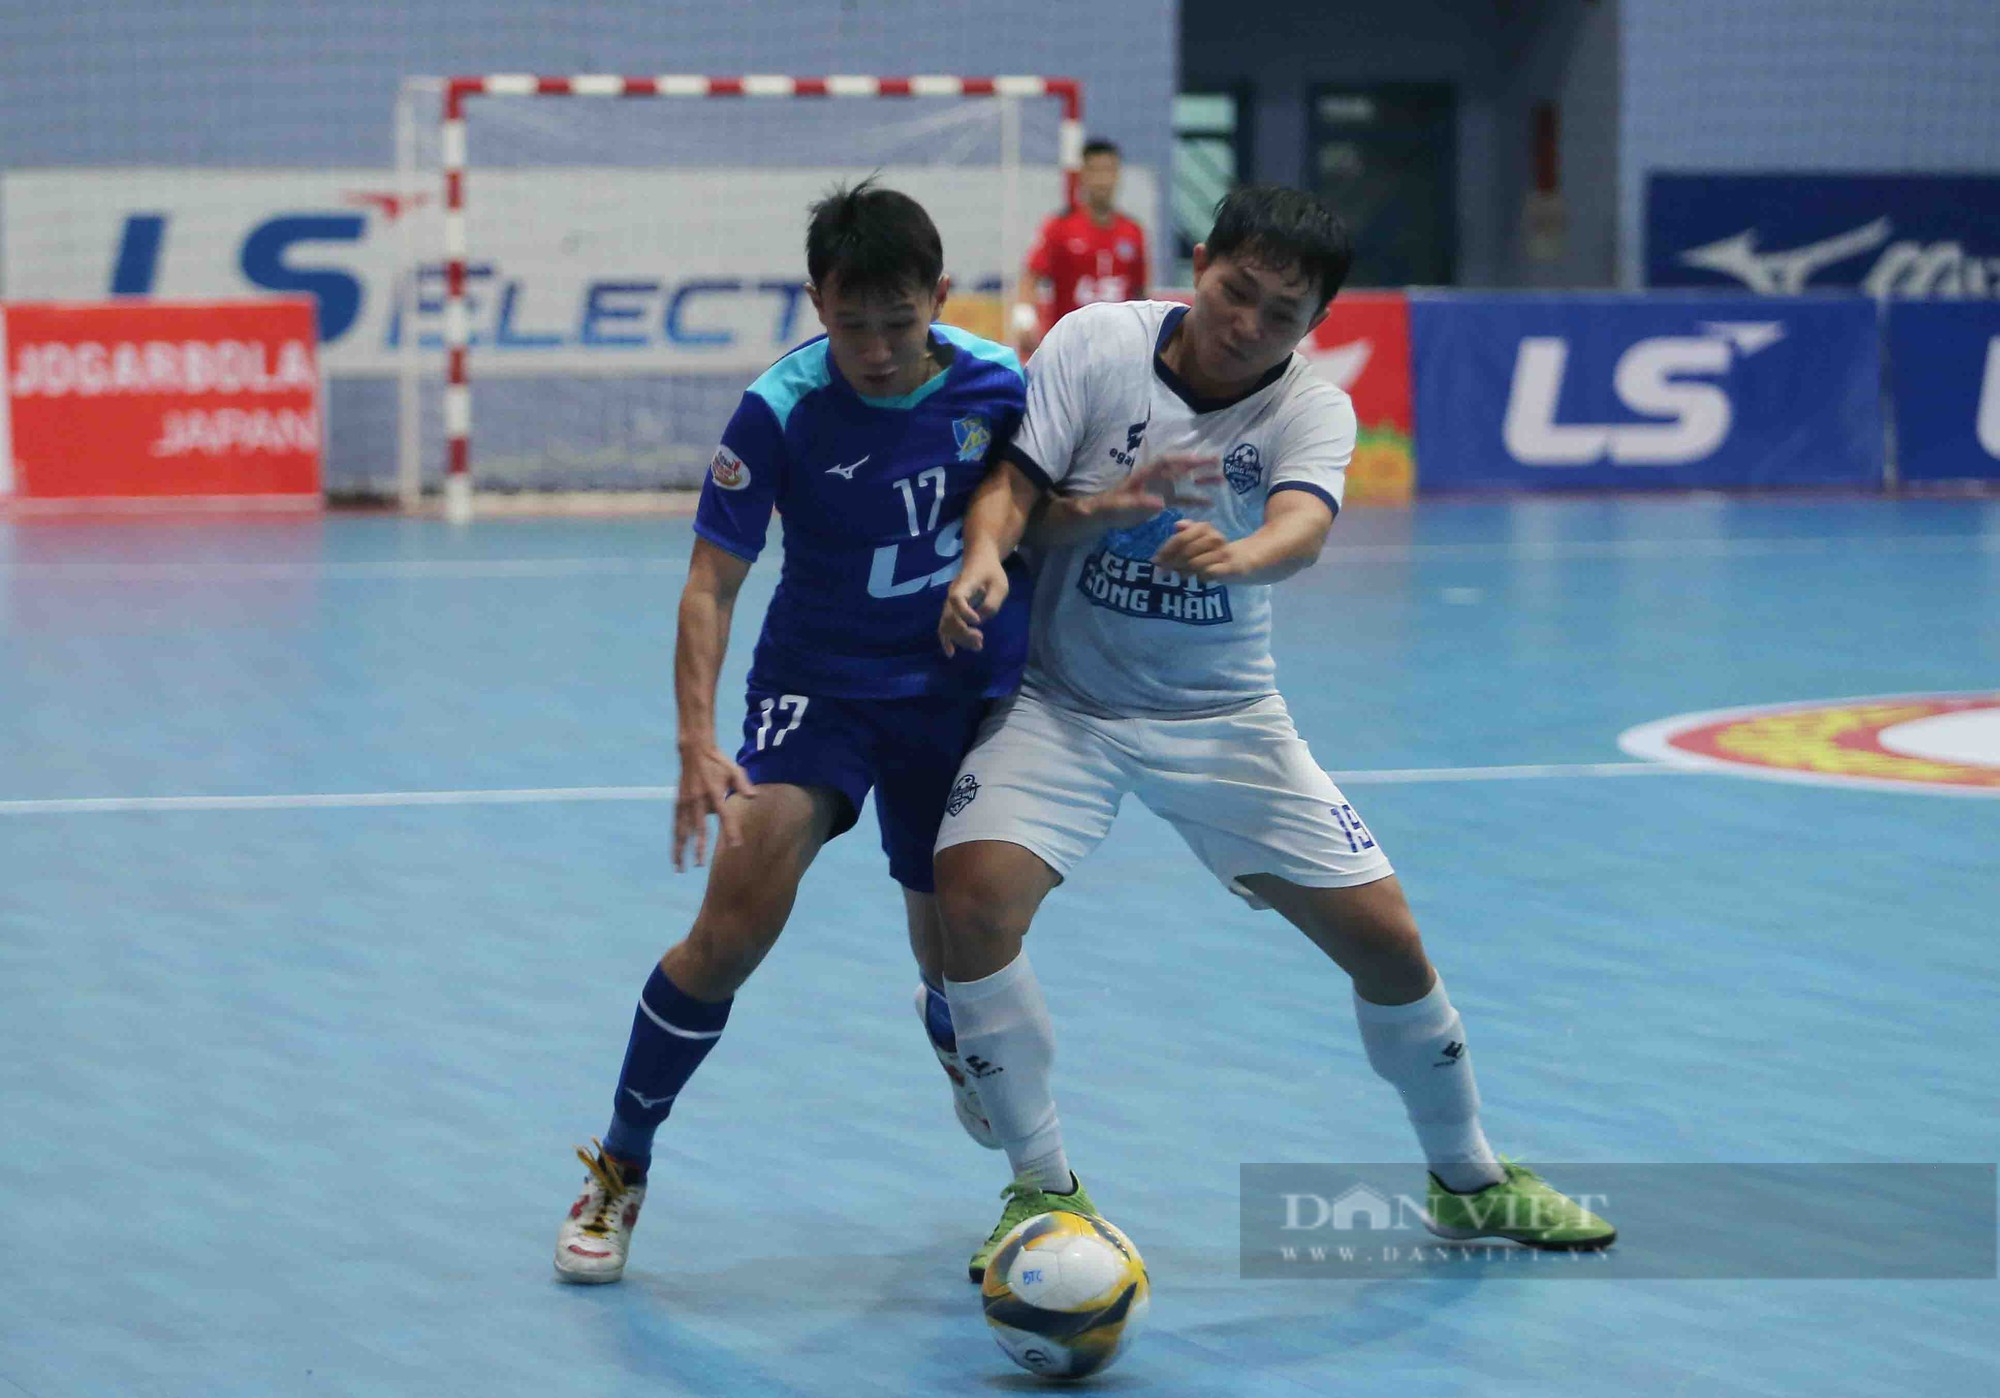 Hoà thót tim phút cuối, Thái Sơn Nam lên ngôi vô địch giải futsal quốc gia - Ảnh 2.